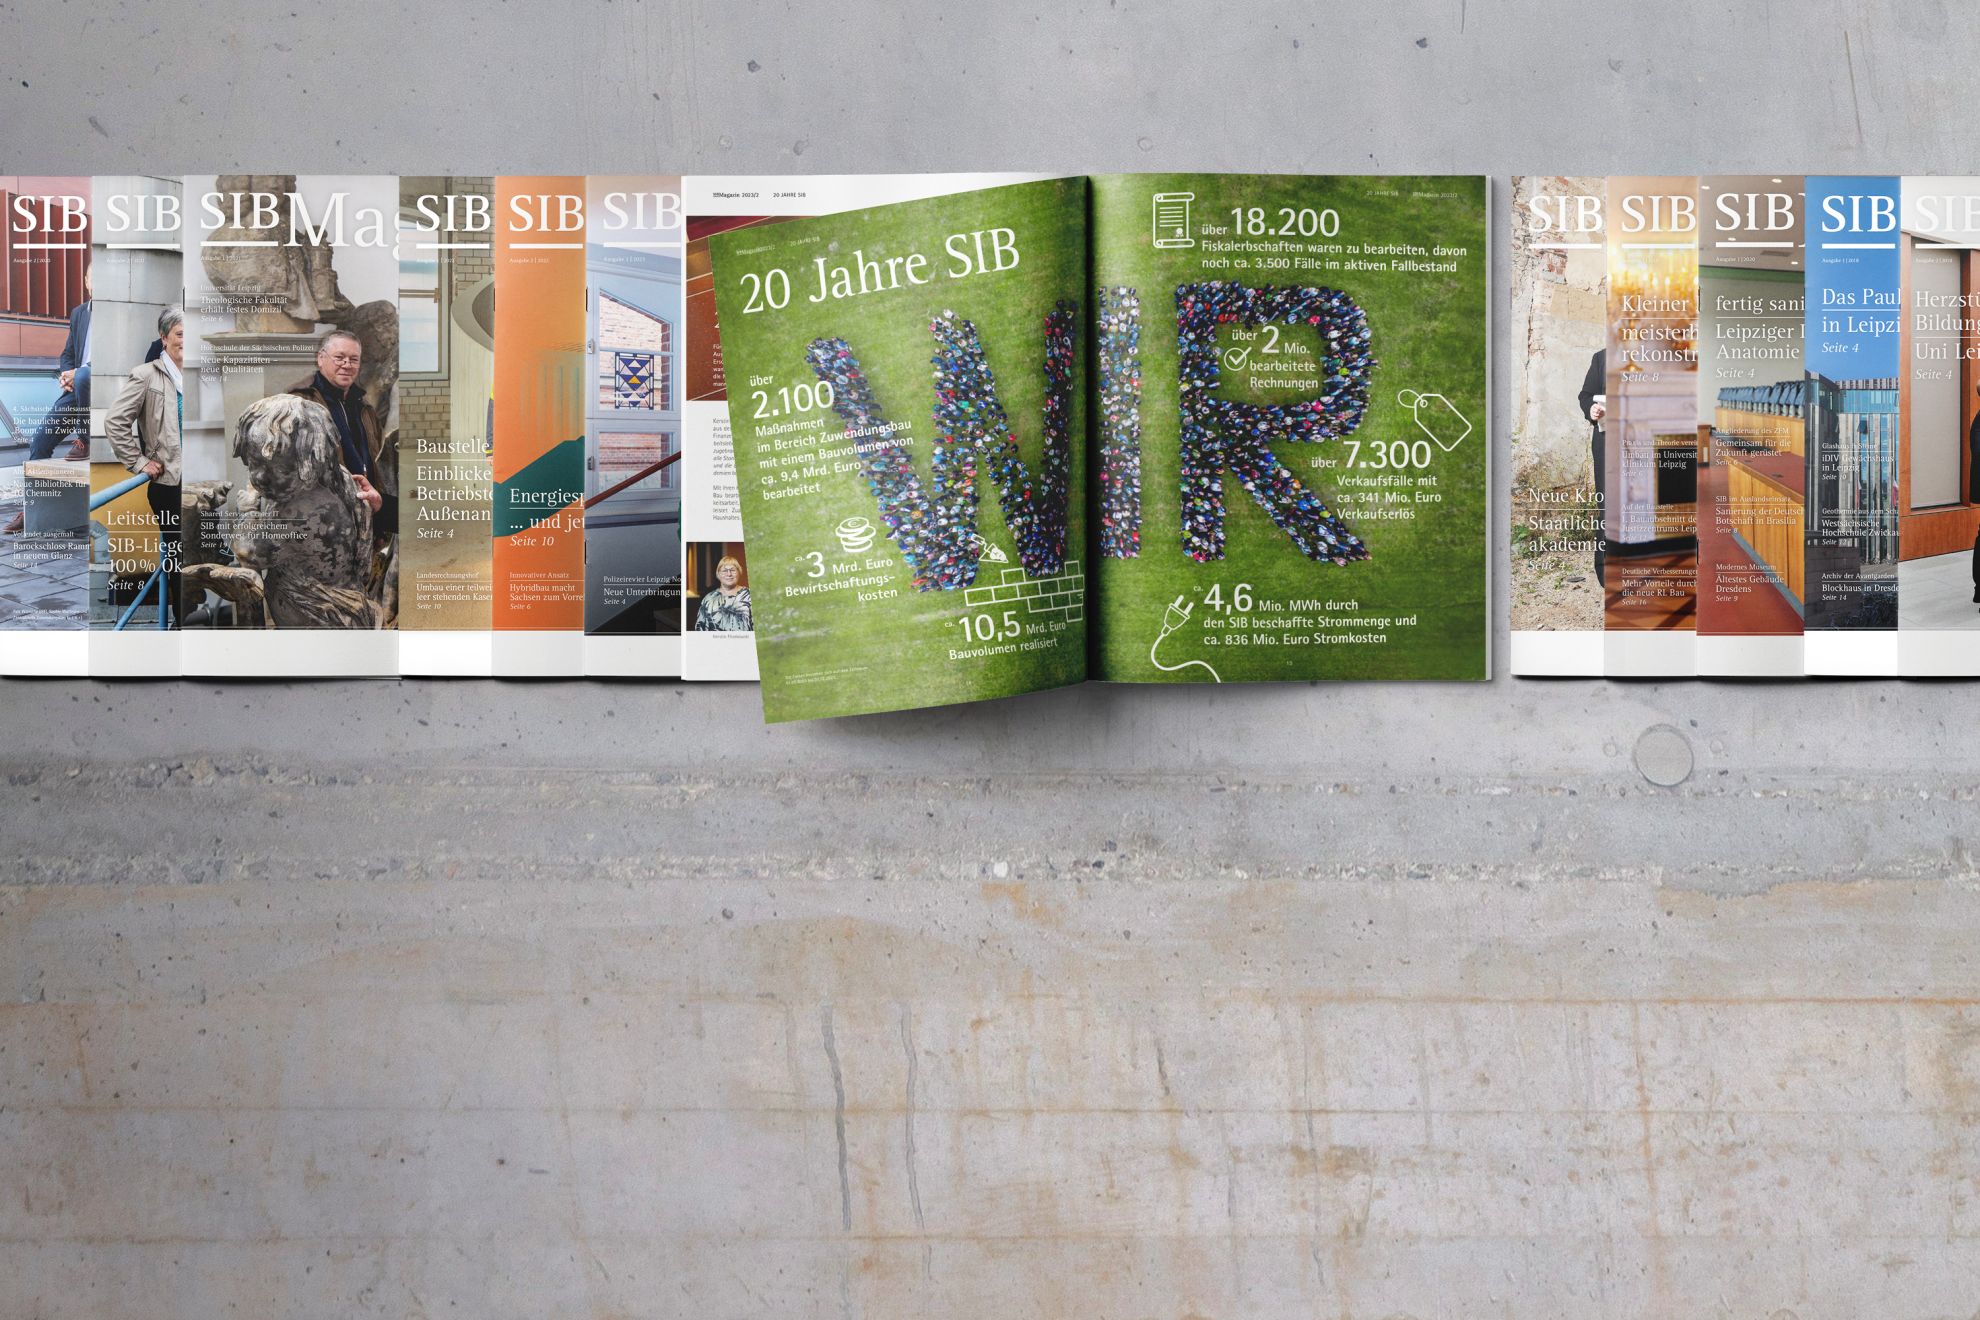 12 Ausgaben des SIB Magazines liegen in einer Reihe auf einem Rohbau-Betonhintergrund. Eines davon ist aufgeschlagen, zeigt "20 Jahre SIB" und ein "WIR" aus vielen Menschen, aus der Luft auf einer grünen Wiese fotografiert.